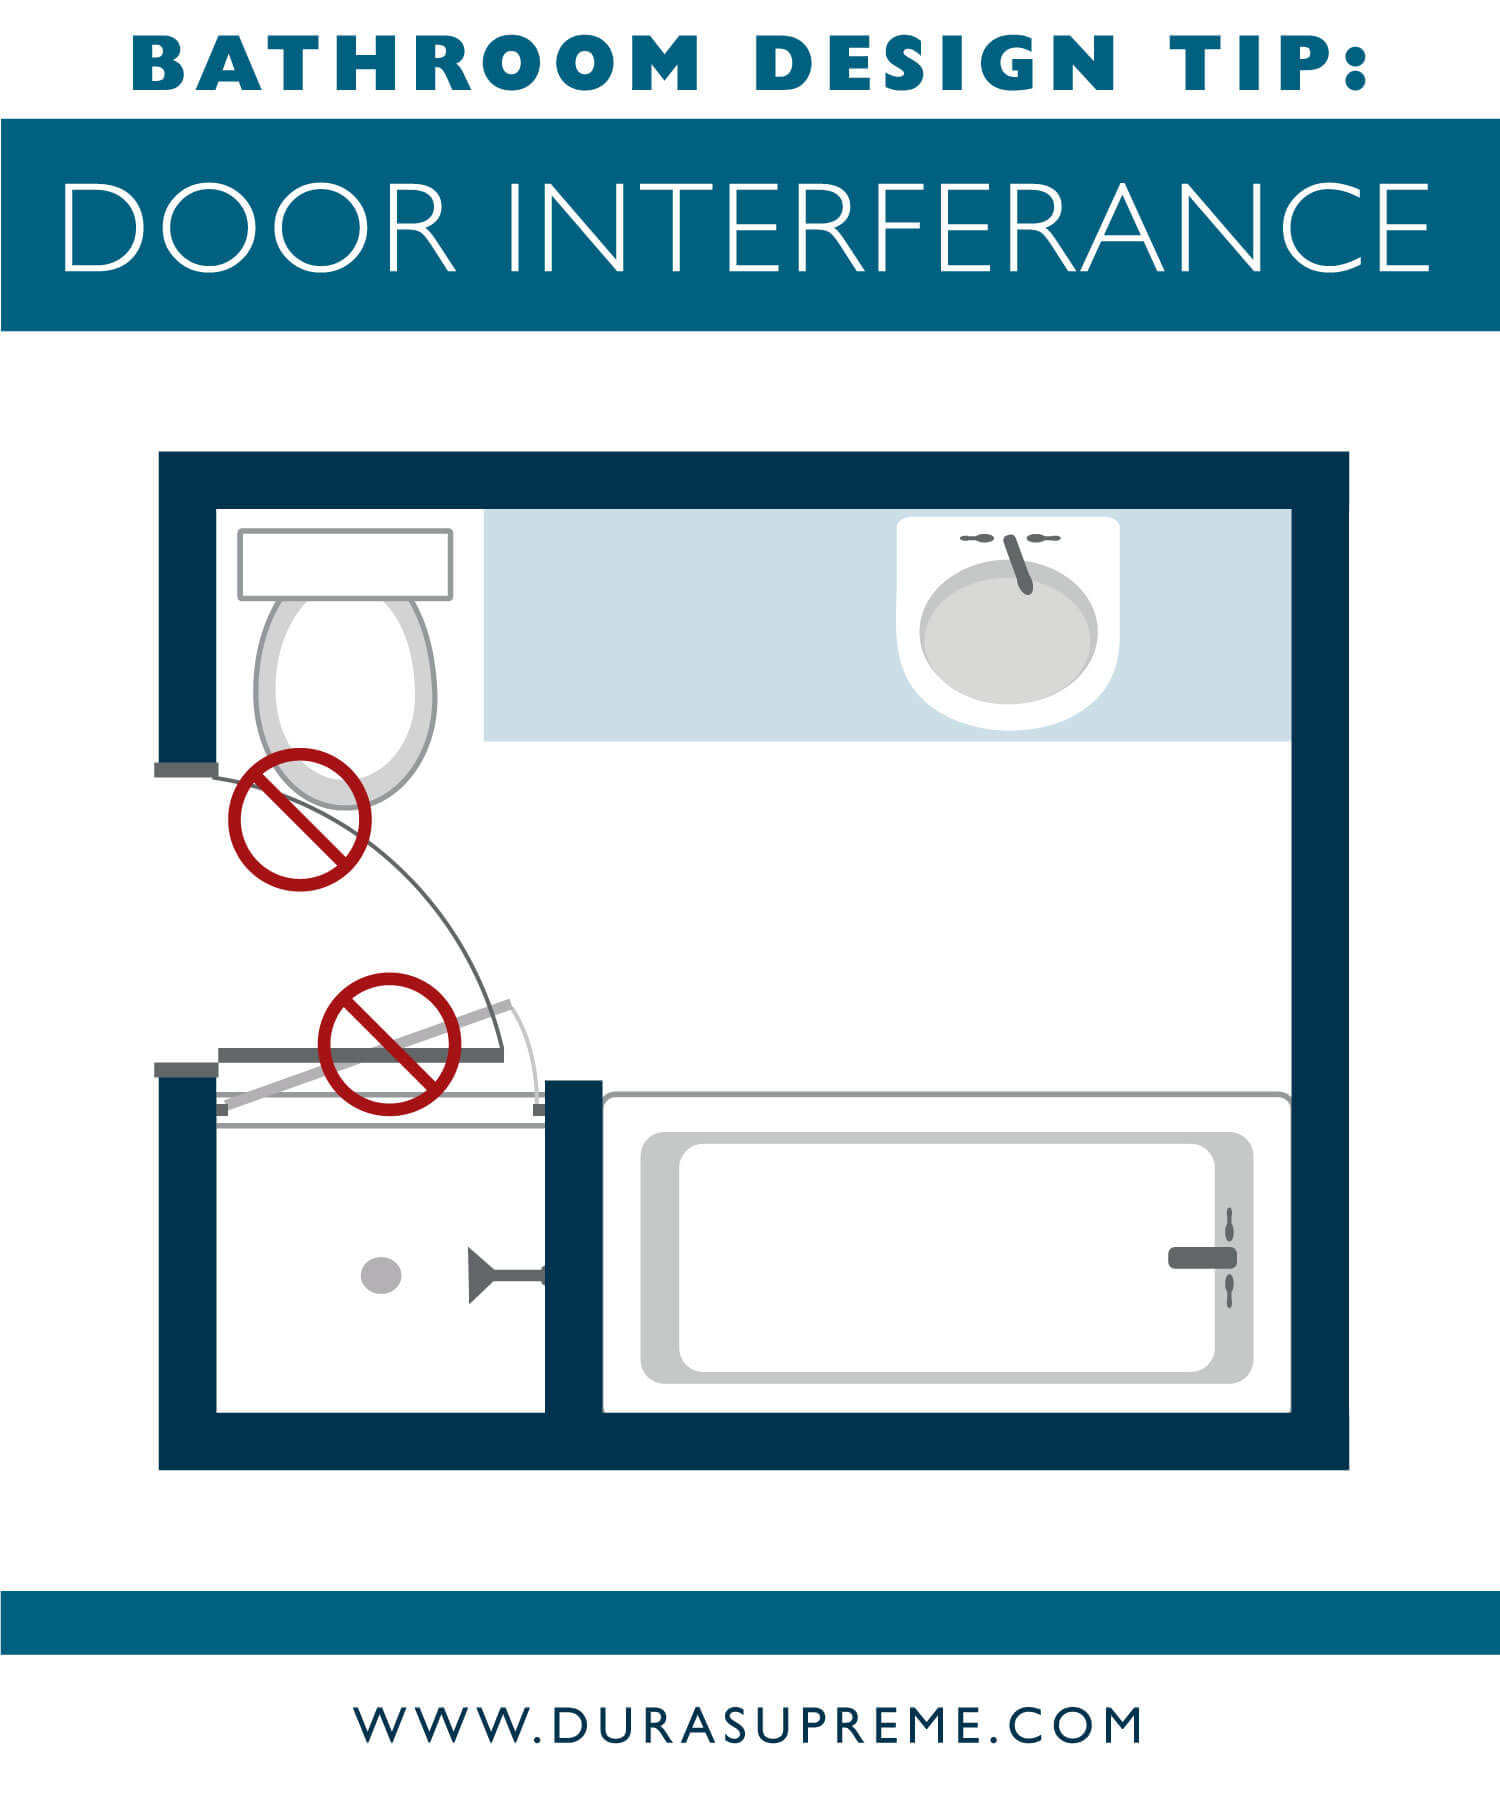 Bathroom design tip - How to Avoid Door Interferance - Best Bathroom Design Guidelines